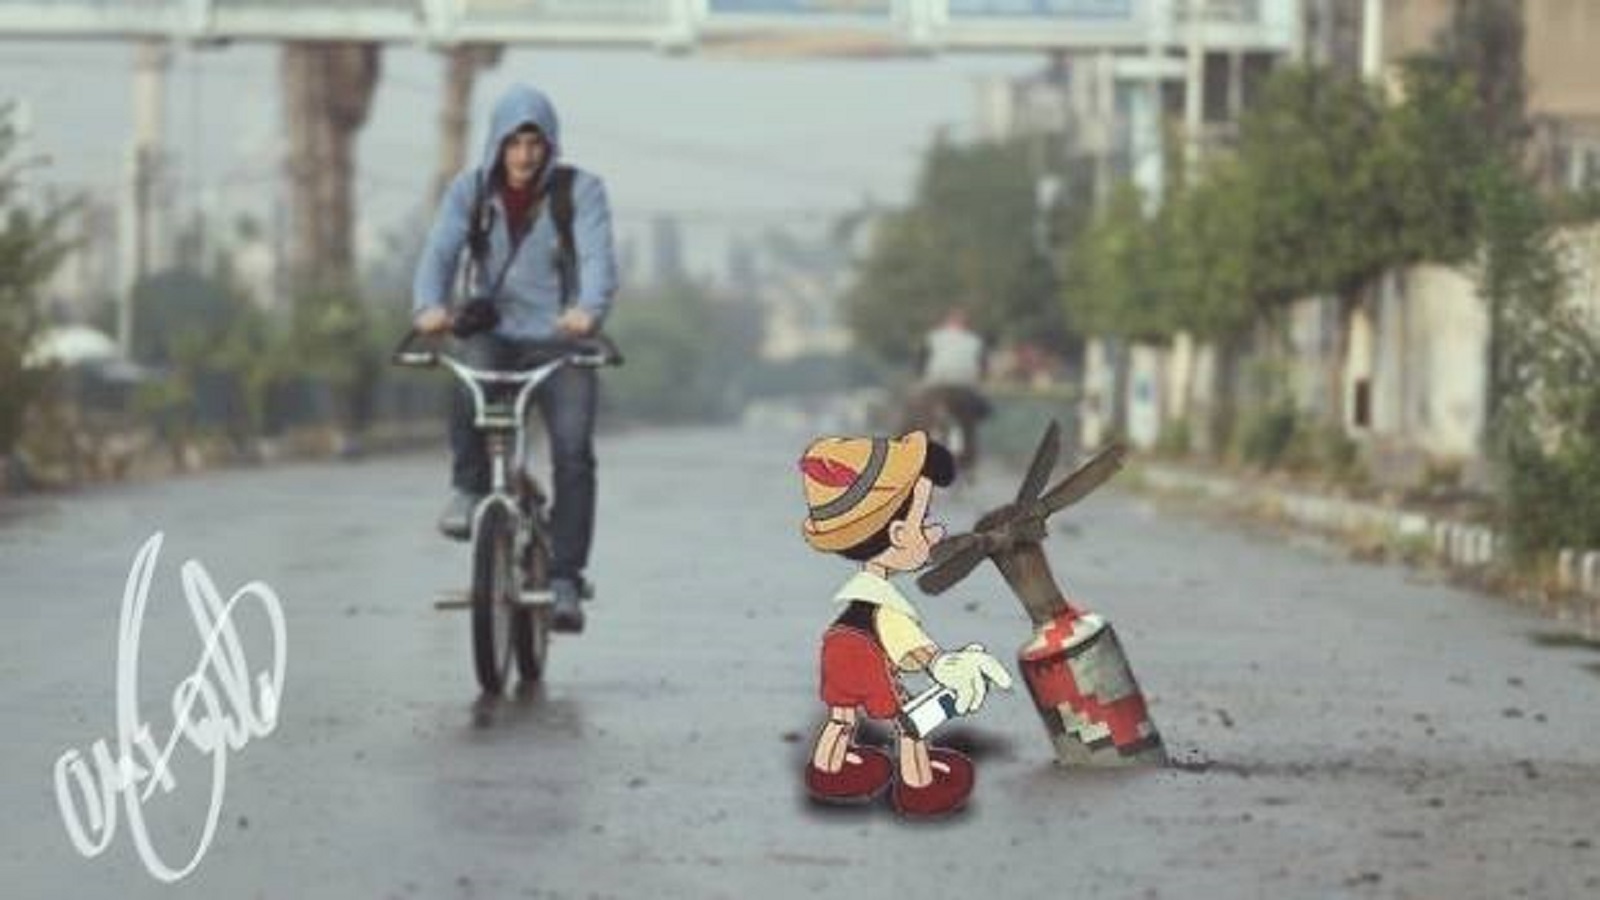 شخصيات ديزني تتجول في شوارع سوريا المنكوبة 